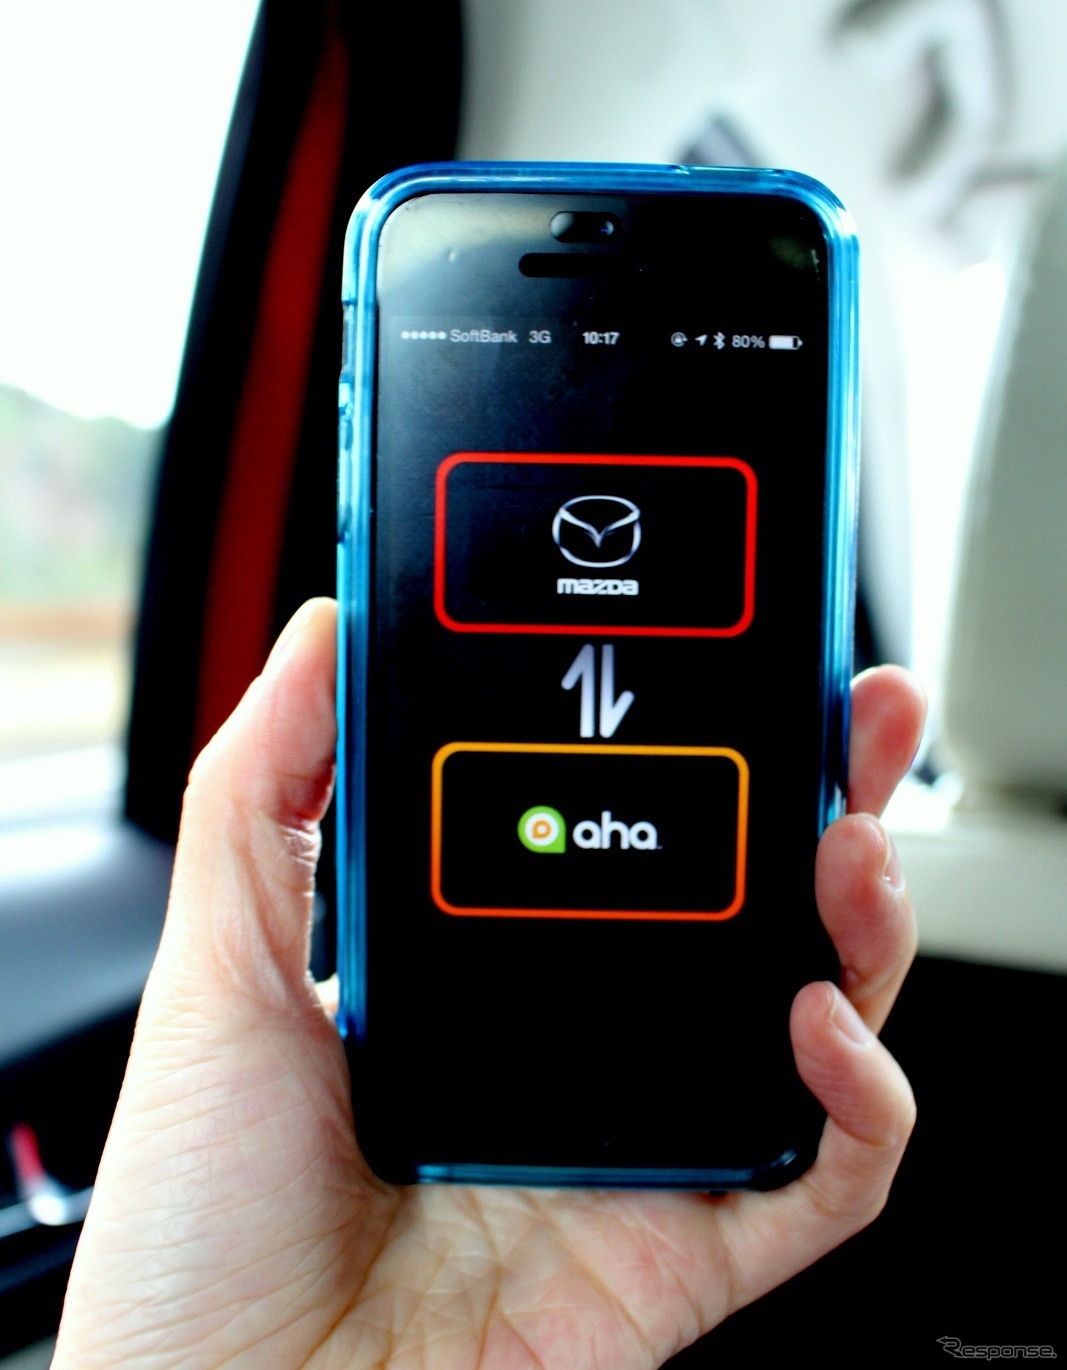 Ahaラジオのアプリをインストールしたスマートフォンをマツダ コネクトと連携する